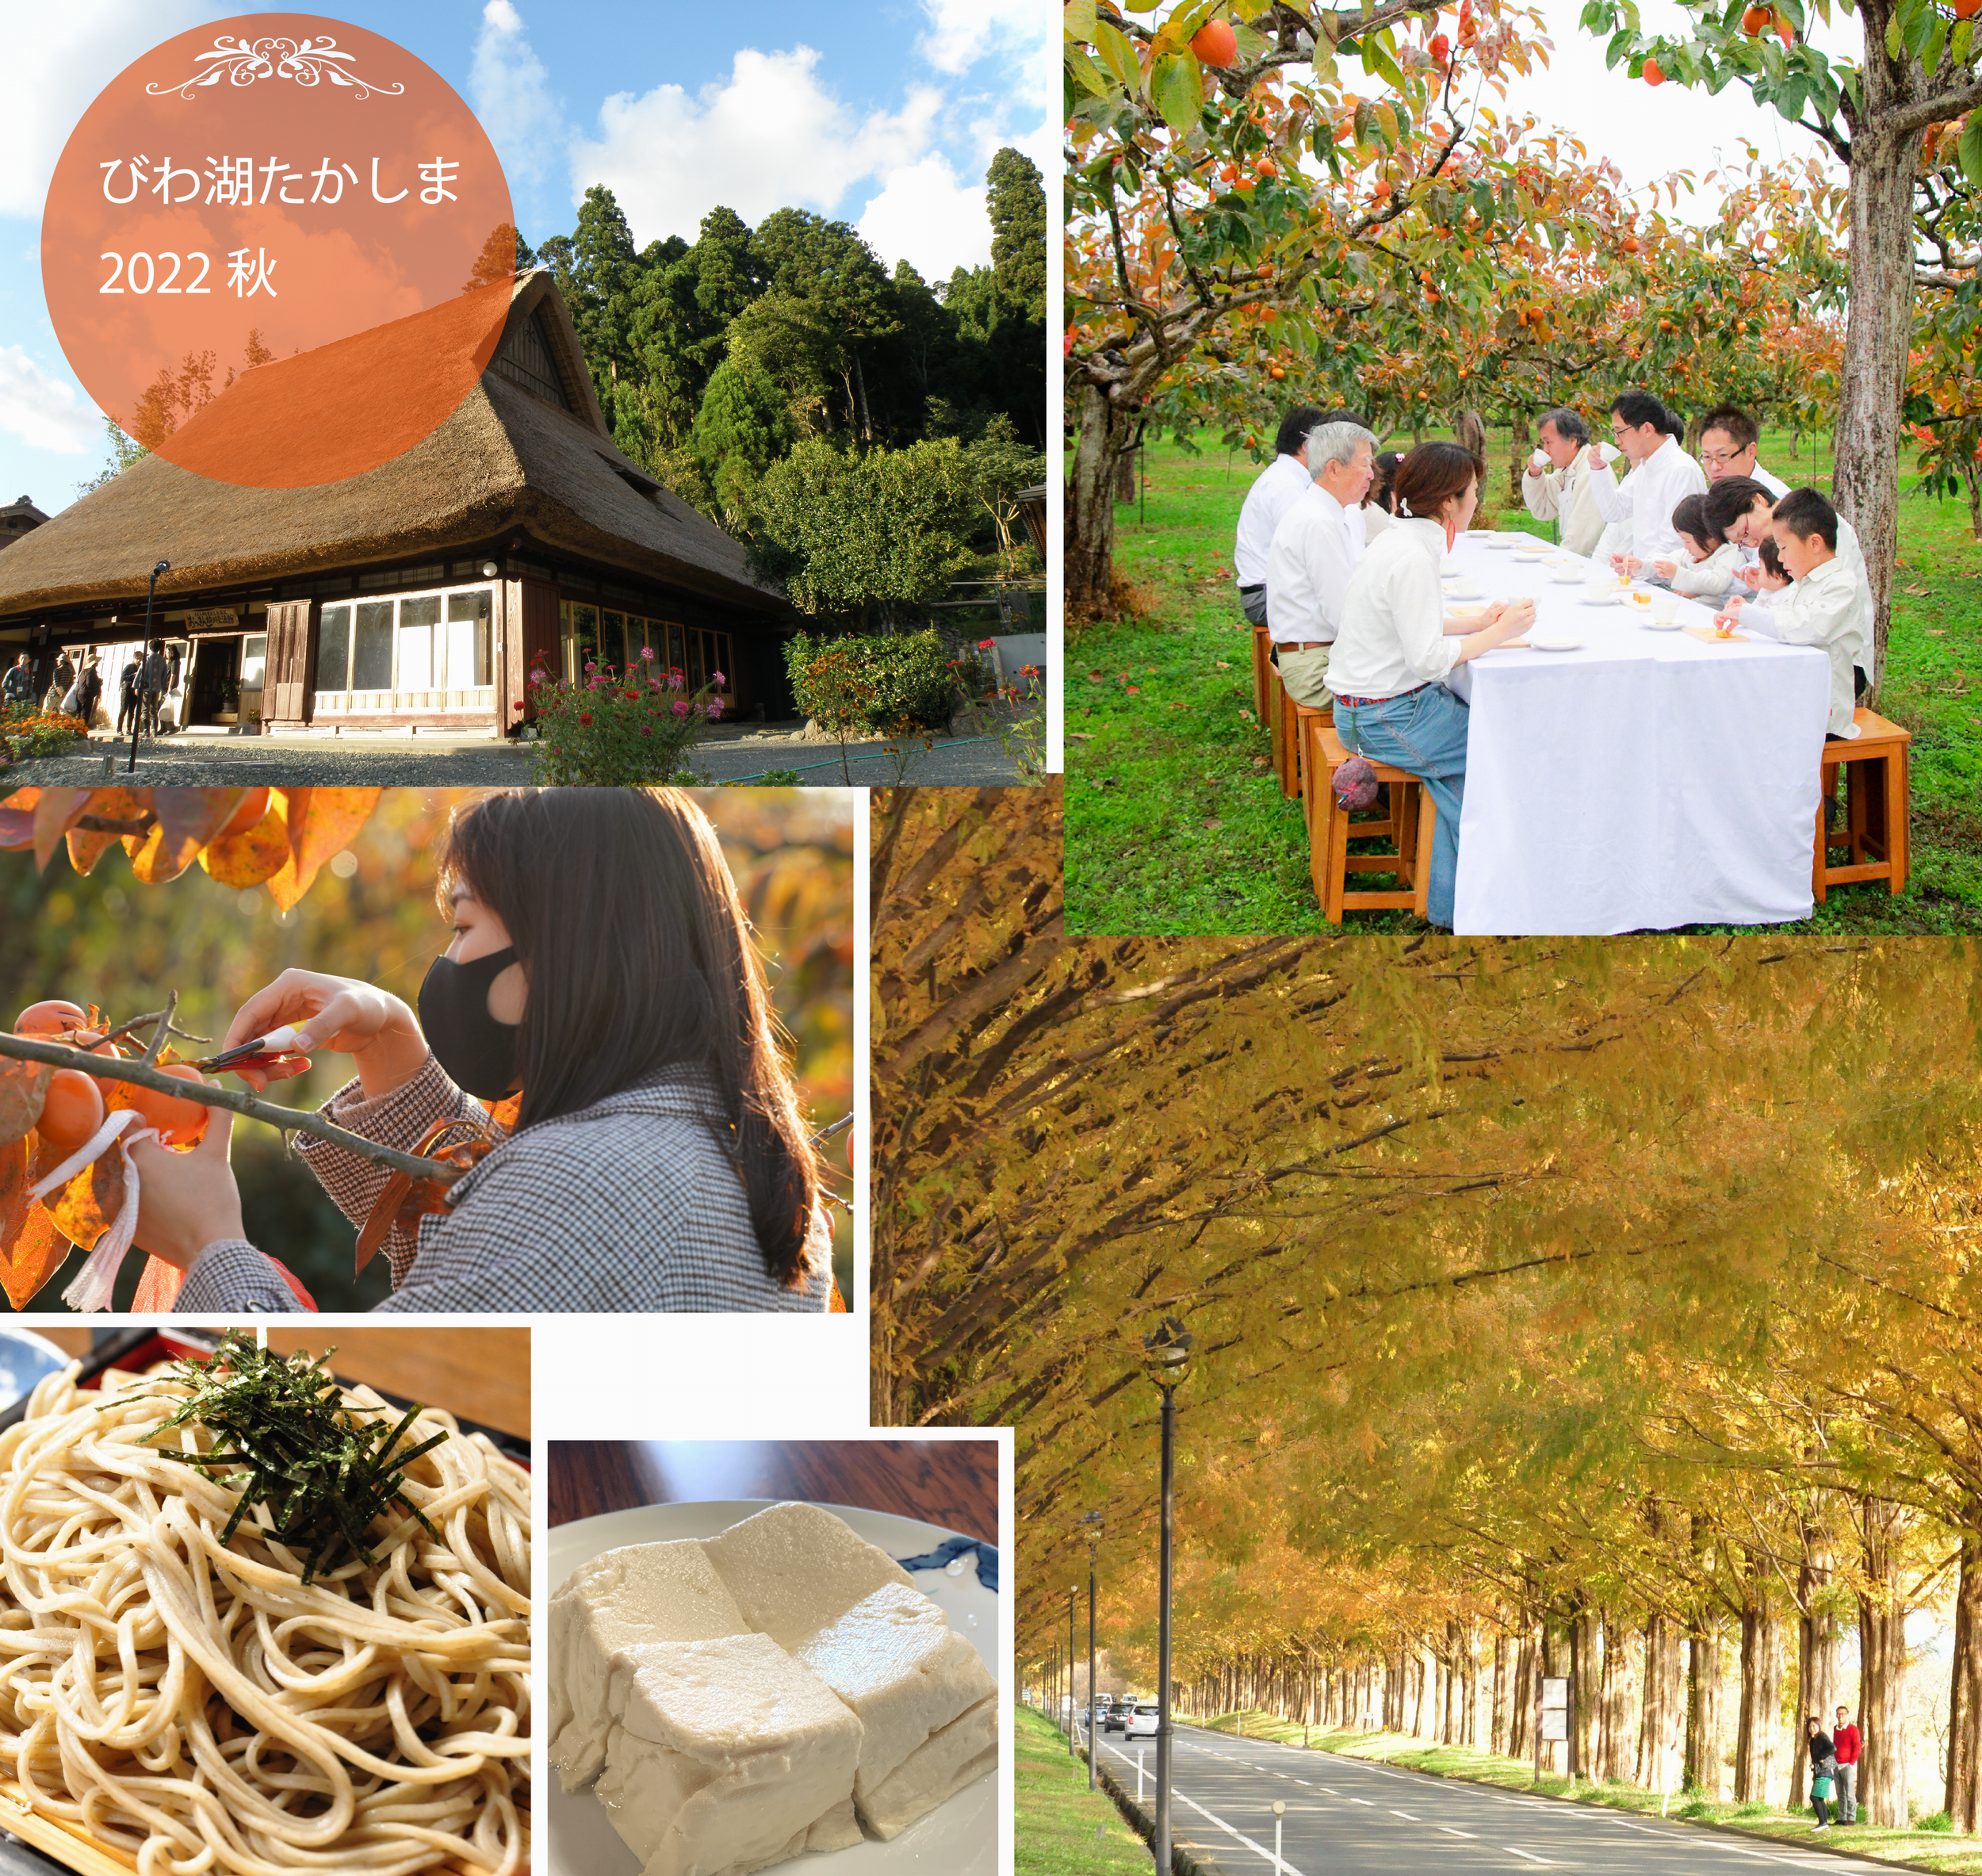 【2022秋季ツアー】高島の食と人を楽しむ